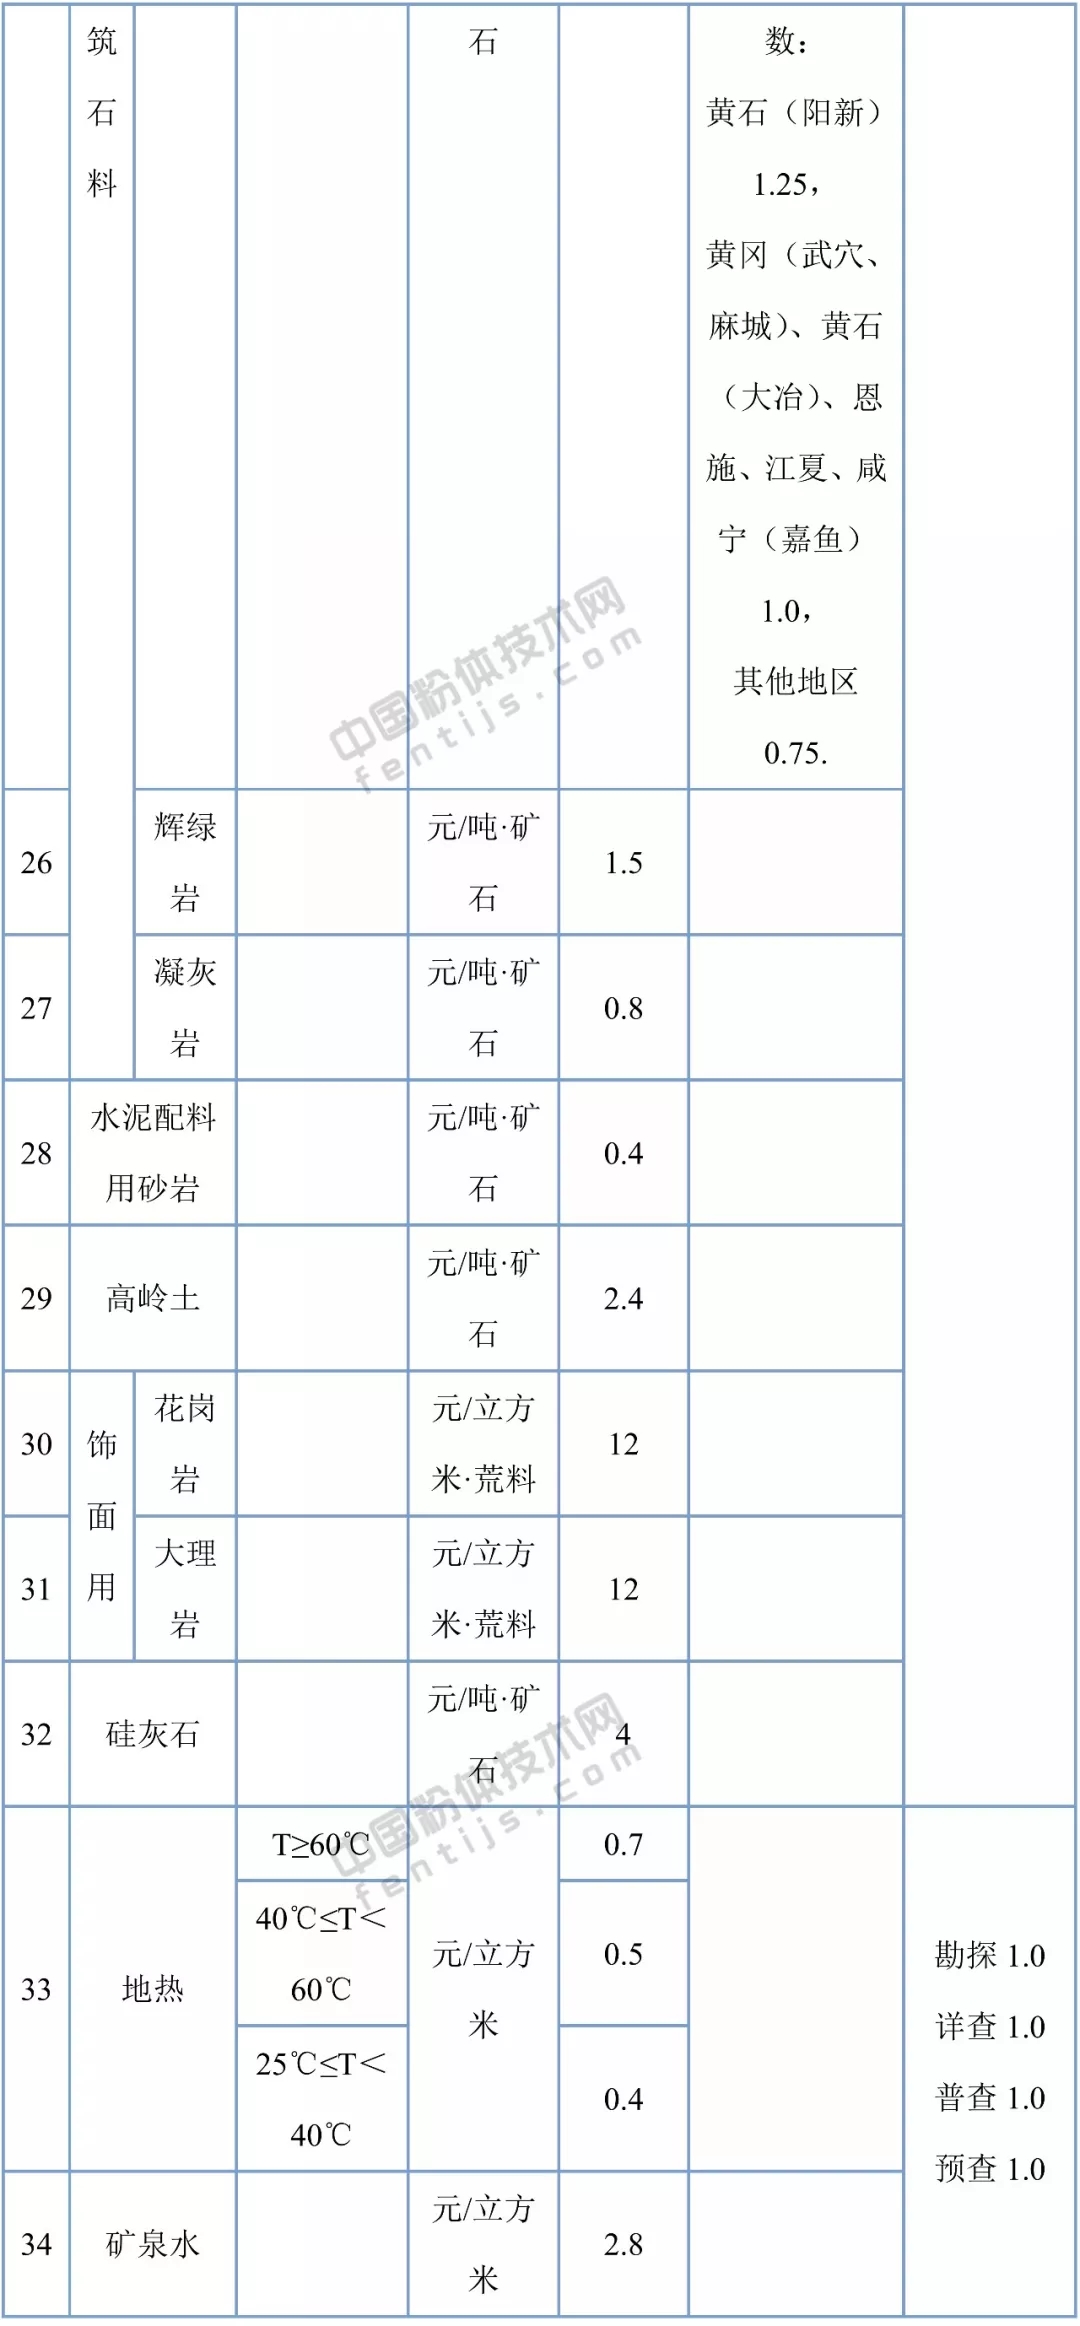 湖北省34个矿种矿业权出让收益市场基准价